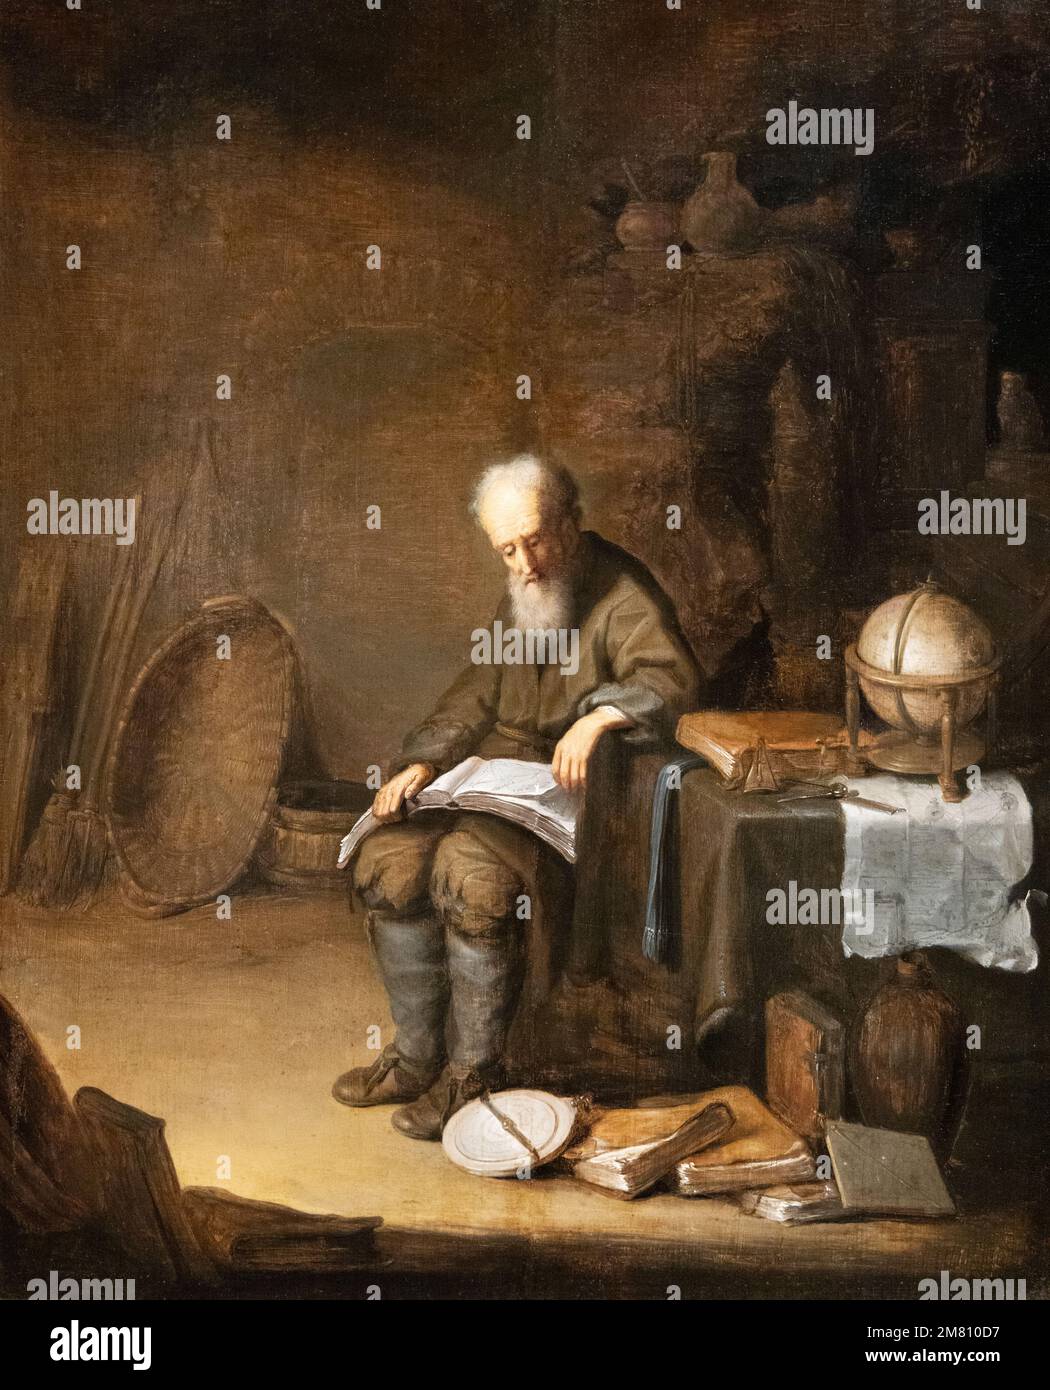 "Un Scholar dans son étude" peinture à l'huile par Jacob van Spreuwen, peintre hollandais du 17th siècle à Leiden; le Musée Czartoryski de Cracovie en Pologne Banque D'Images